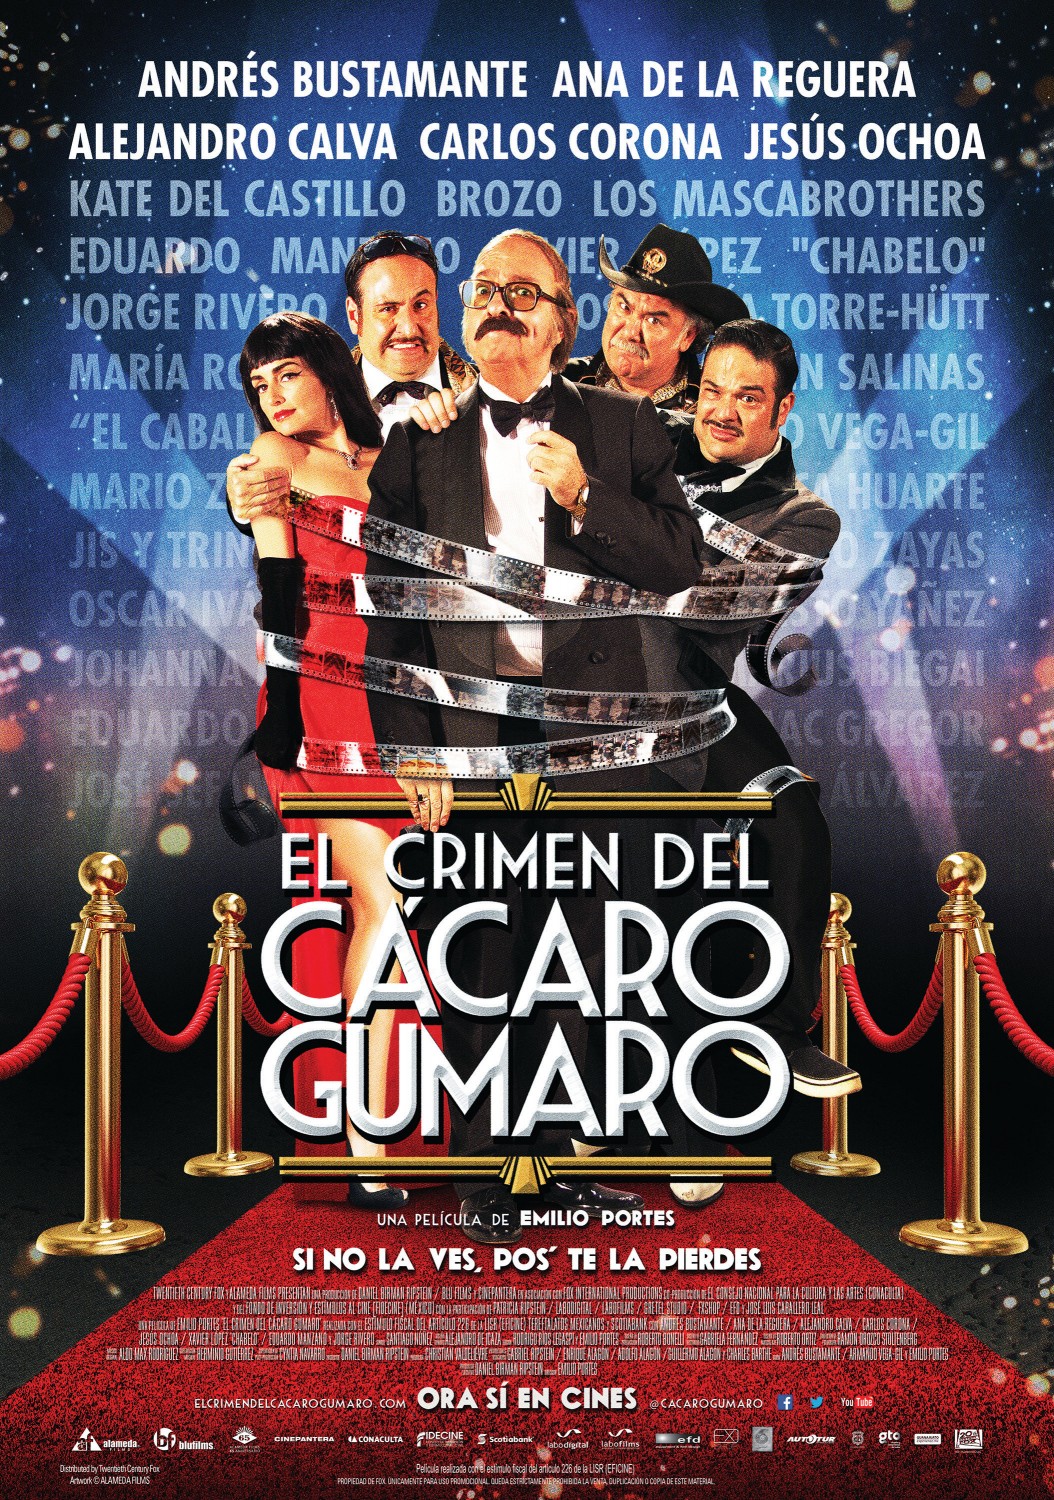 Extra Large Movie Poster Image for El Crimen del Cacaro Gumaro (#5 of 12)